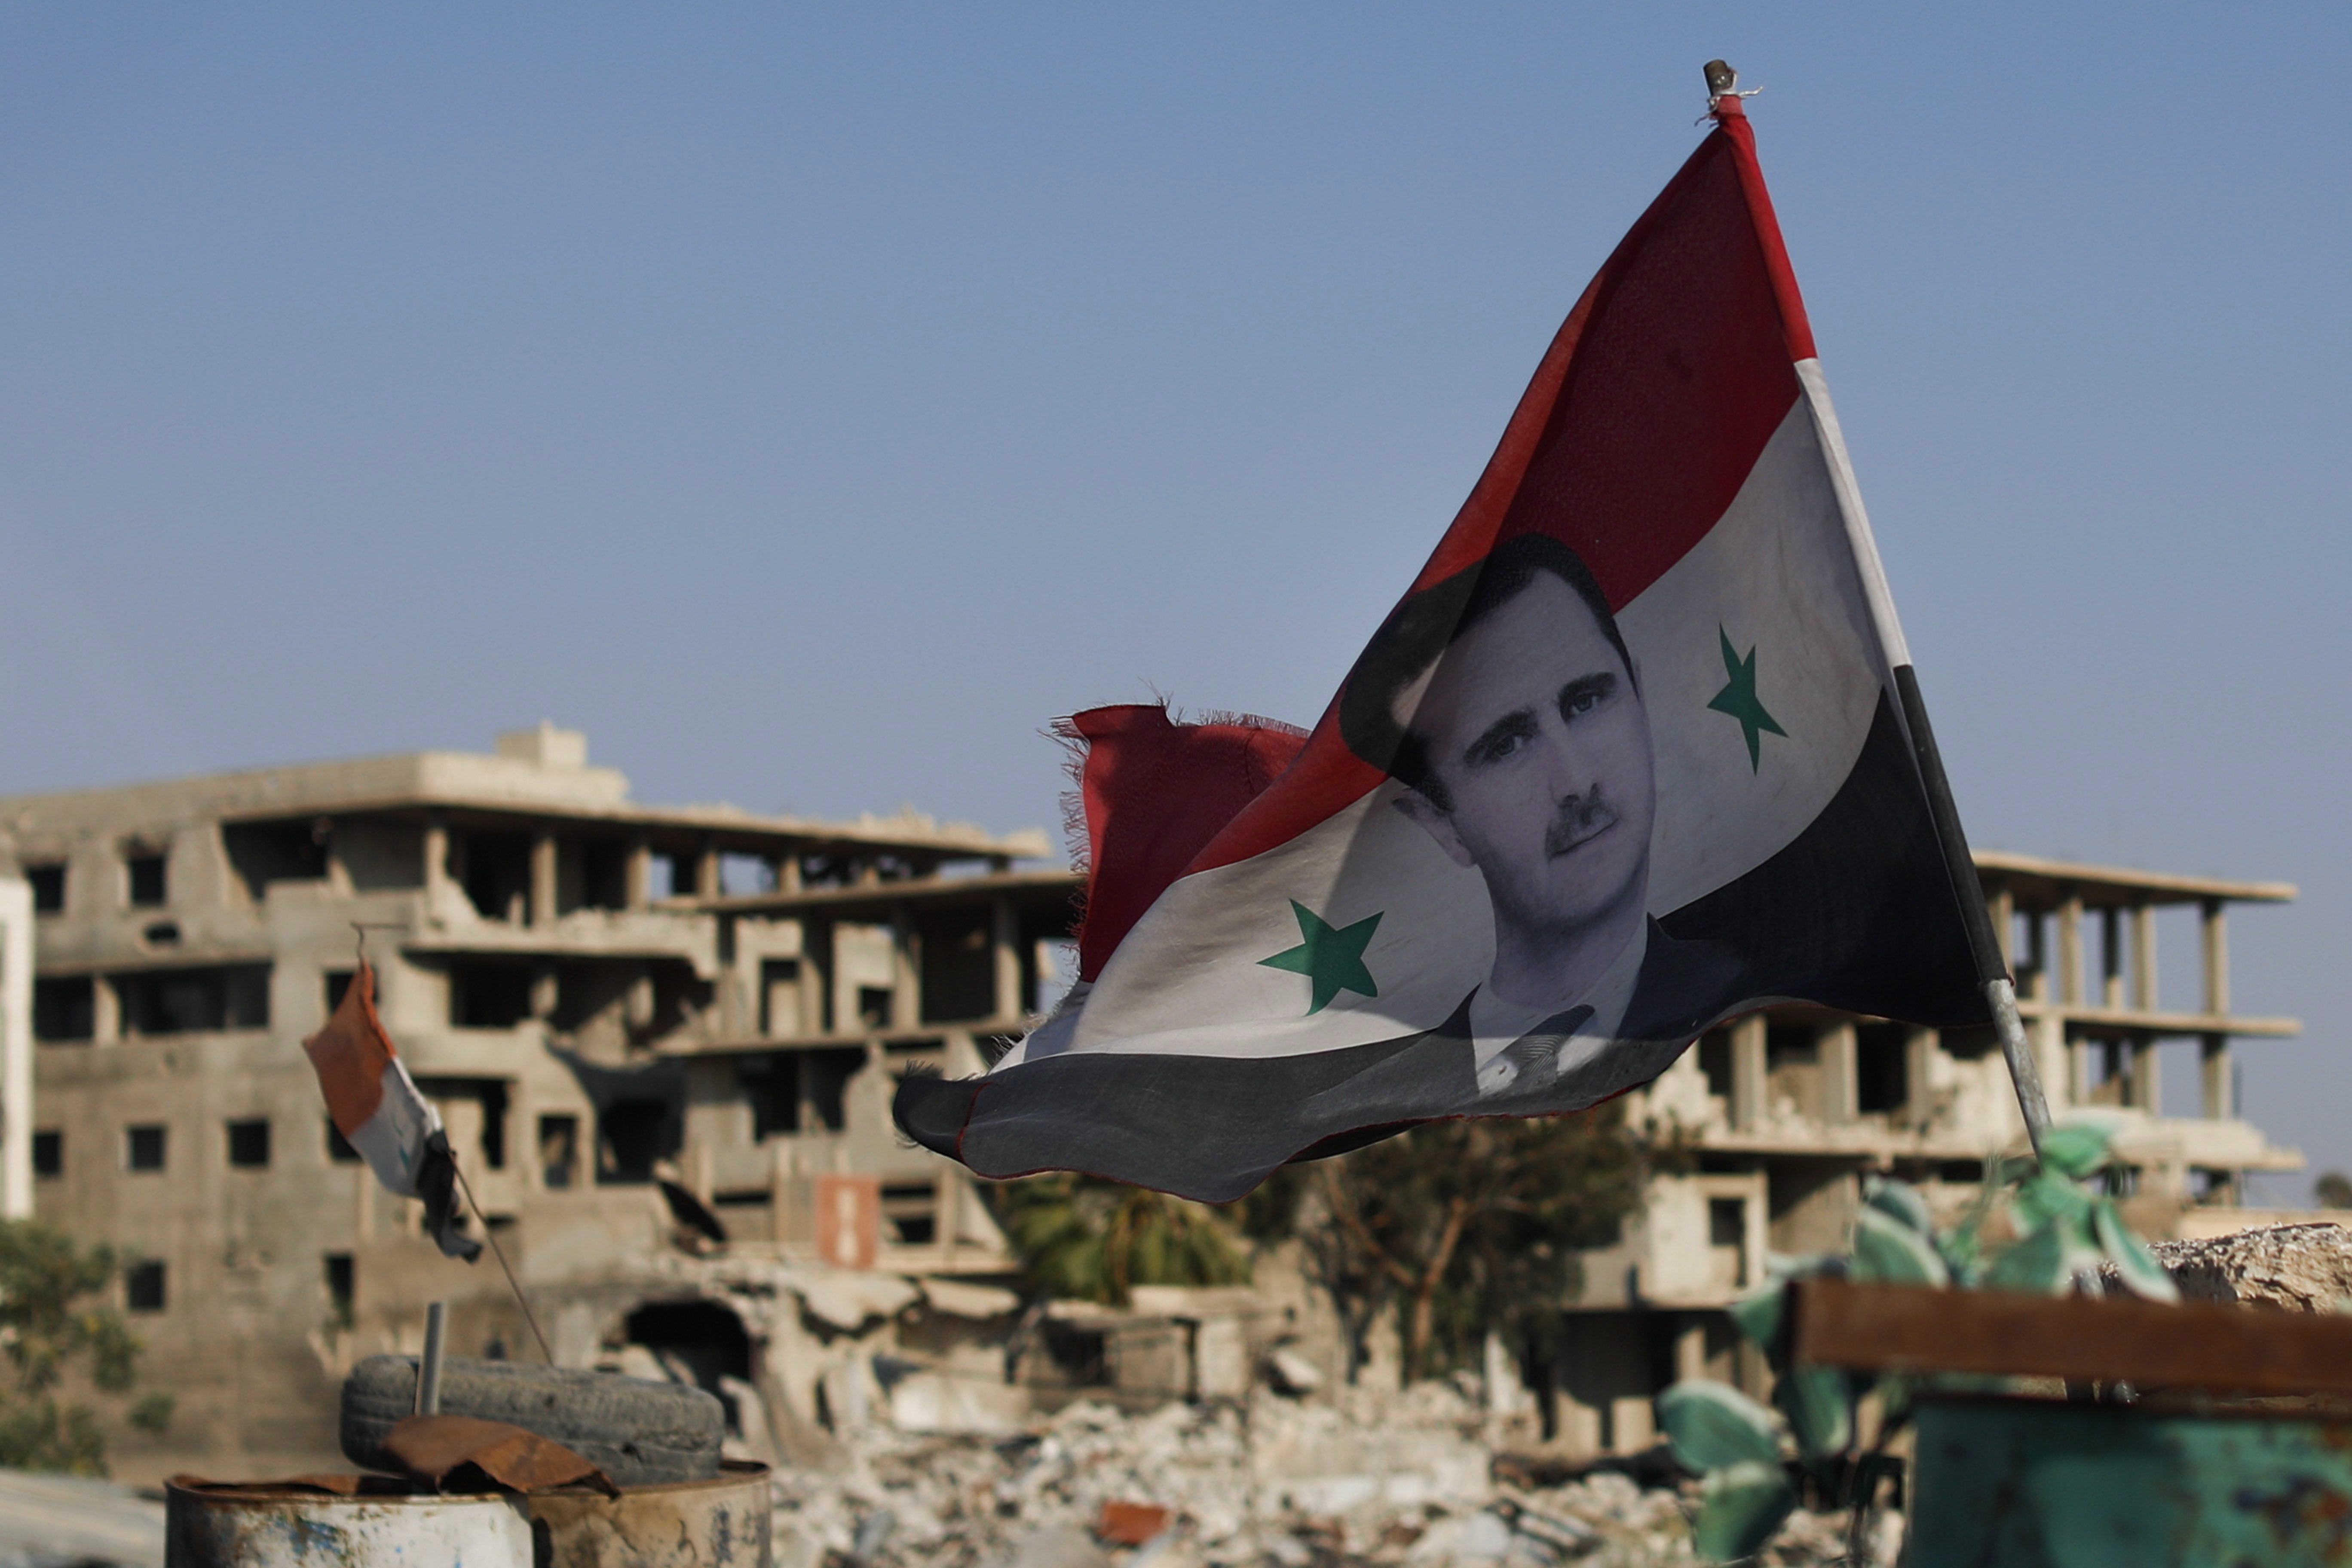 За сирию и башара. Башар Асад флаг Сирии. Дворец Башара Асада в Дамаске. Башар Асад и курды. Армия Башара Асада.